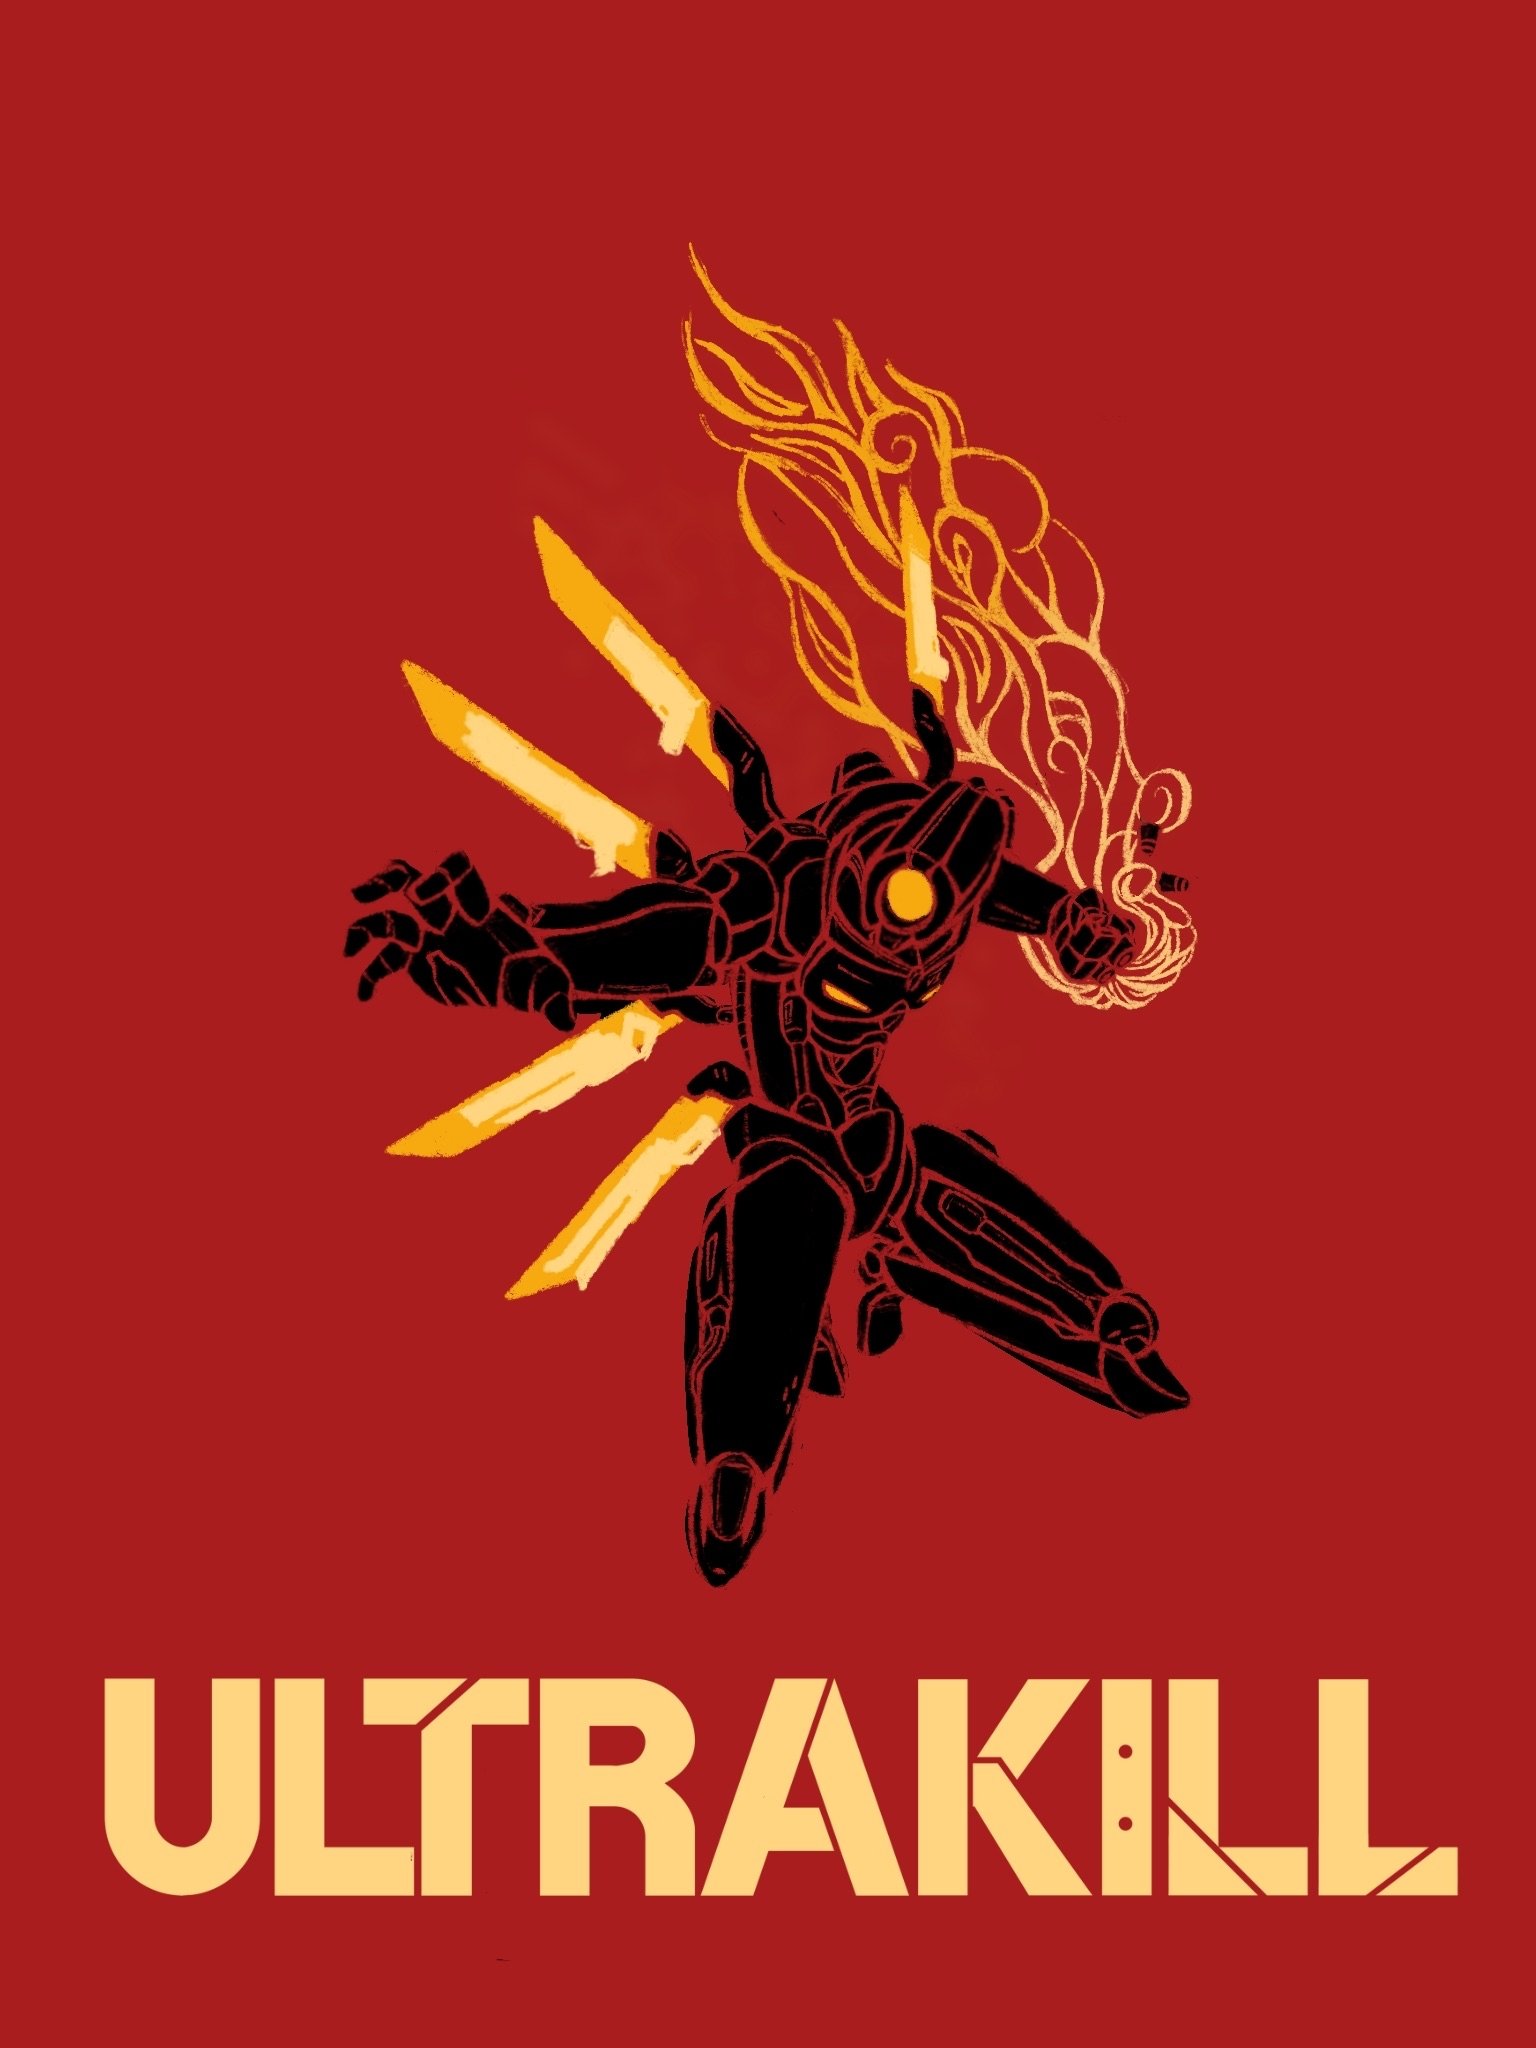 Ultrakill Merch